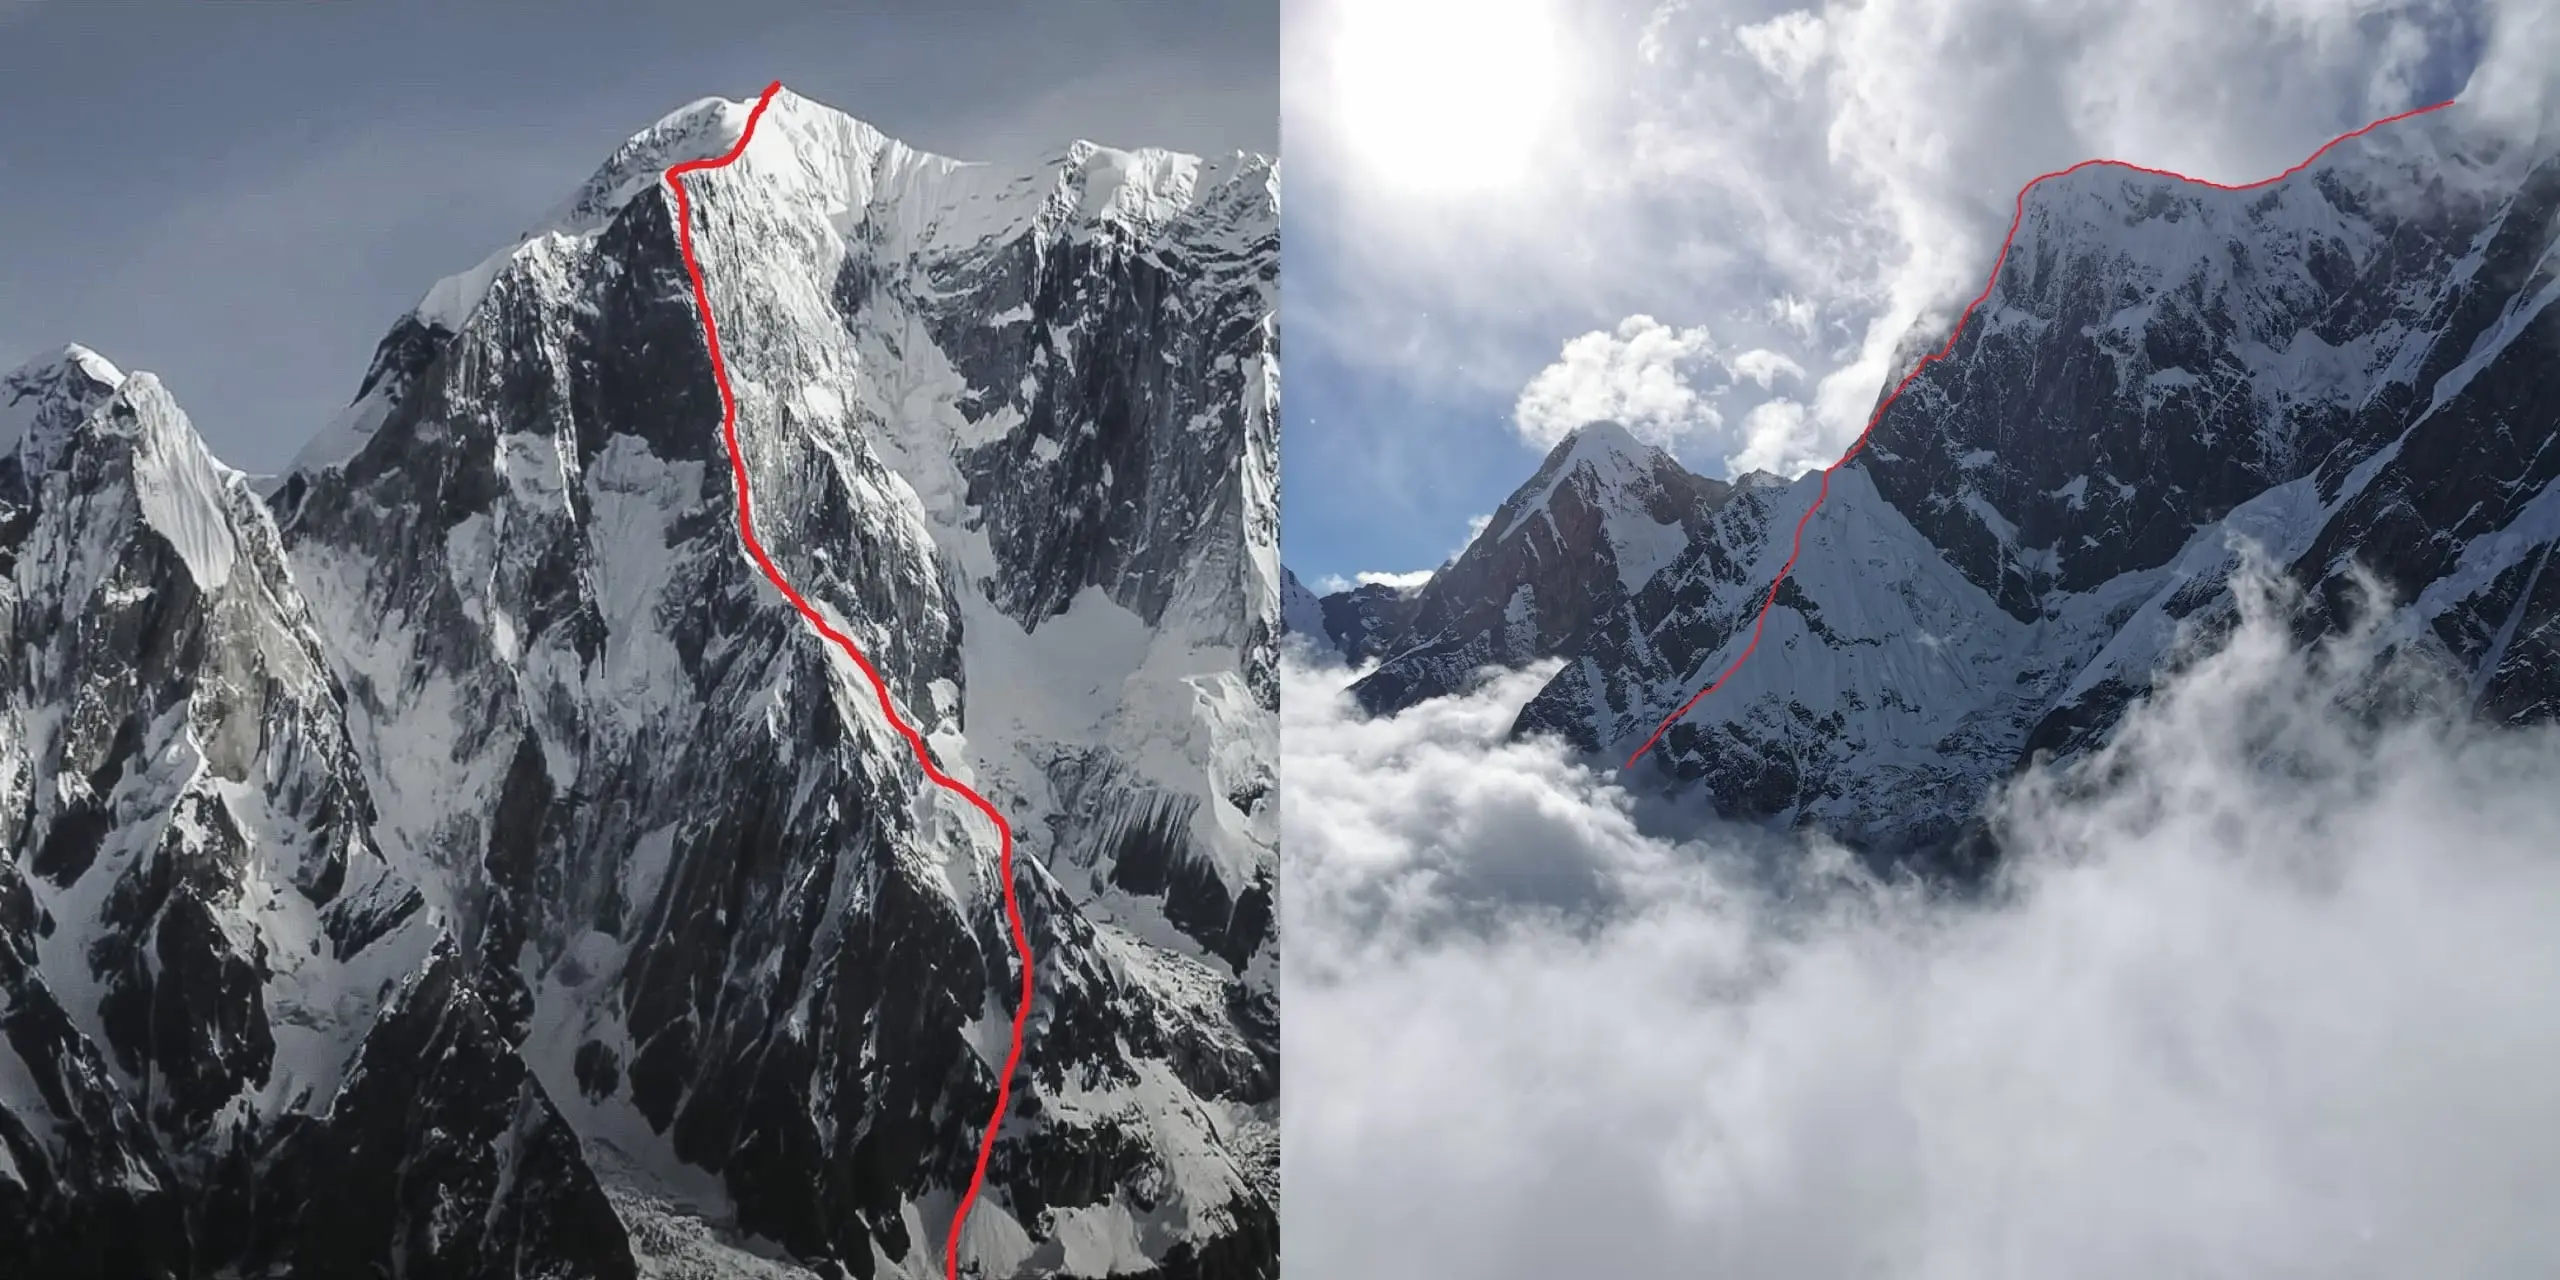  маршрут "Терпение" ("Patience") по ранее никем не пройденному юго-восточному гребню горы Аннапурна III (Annapurna III 7555 метров) в Непале